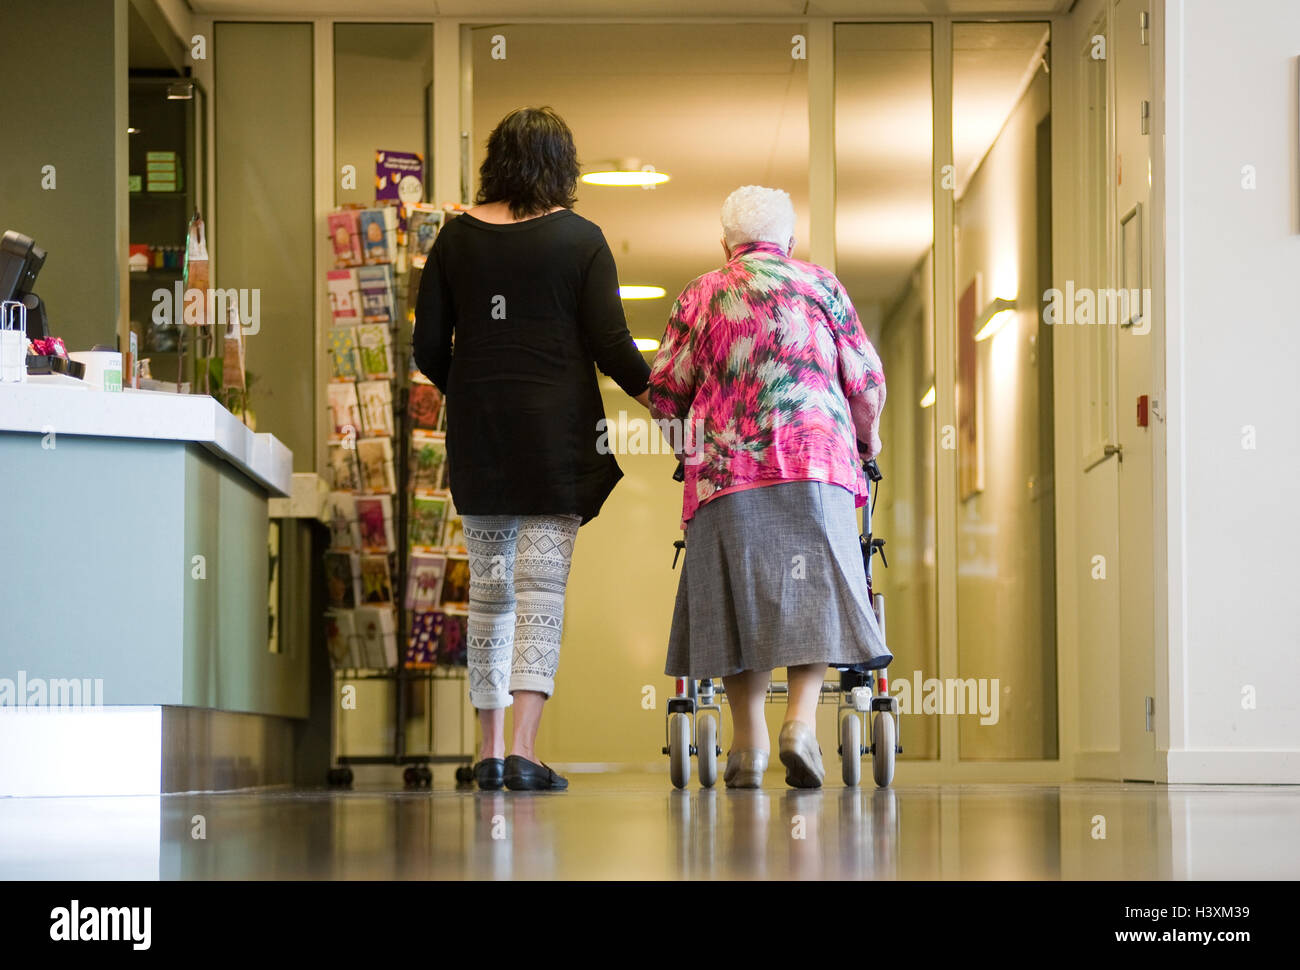 ALMELO, Paesi Bassi - 15 giugno 2016: una donna è assistere a una donna anziana con un rollator in una casa anziani. Foto Stock